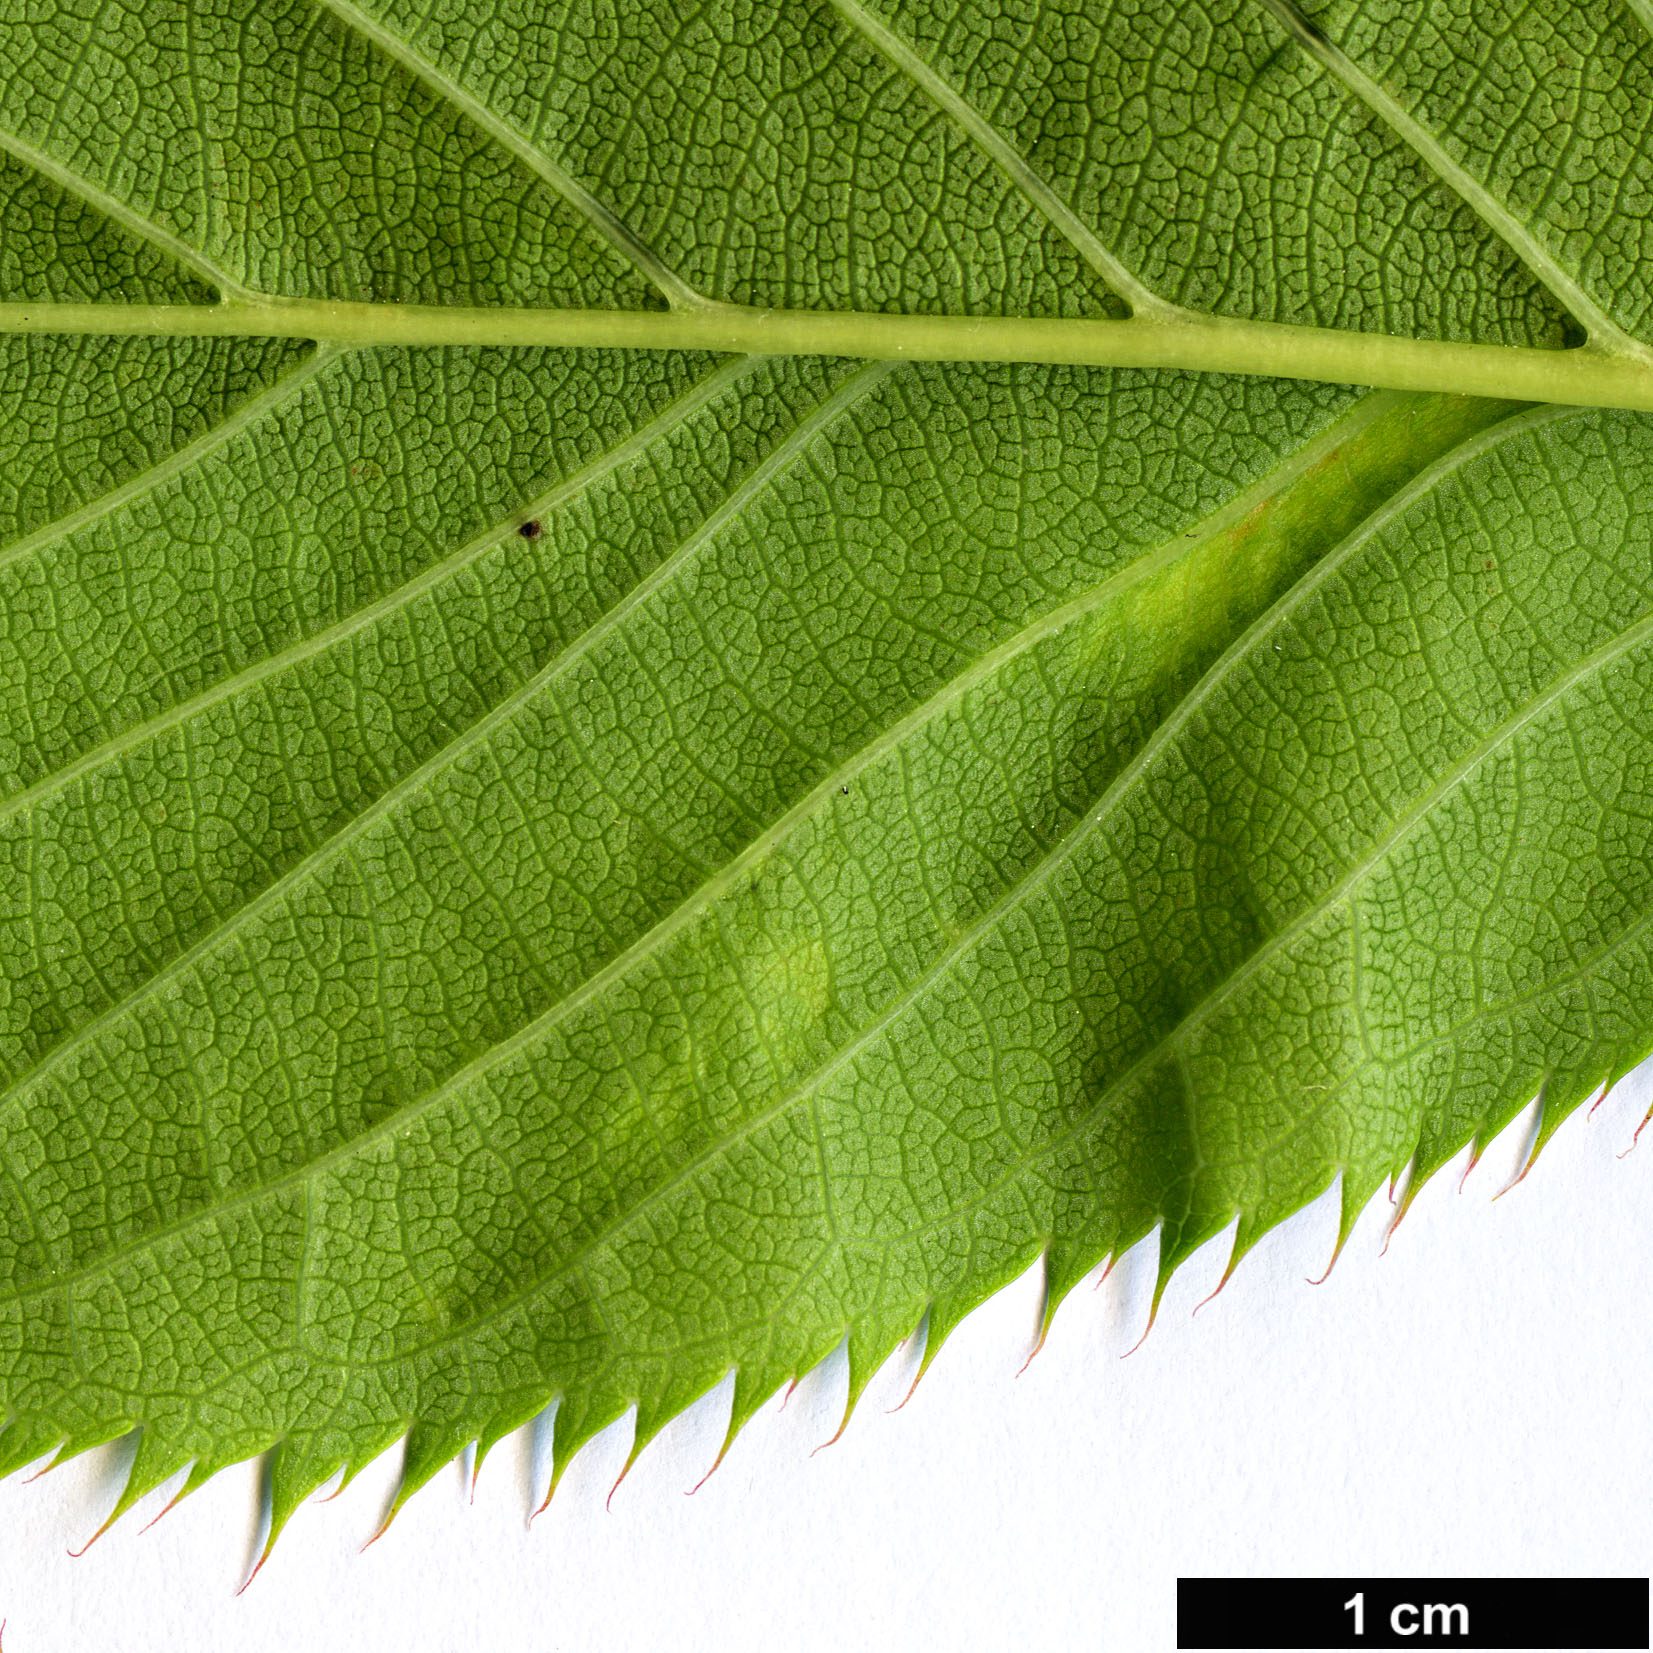 High resolution image: Family: Rosaceae - Genus: Prunus - Taxon: speciosa